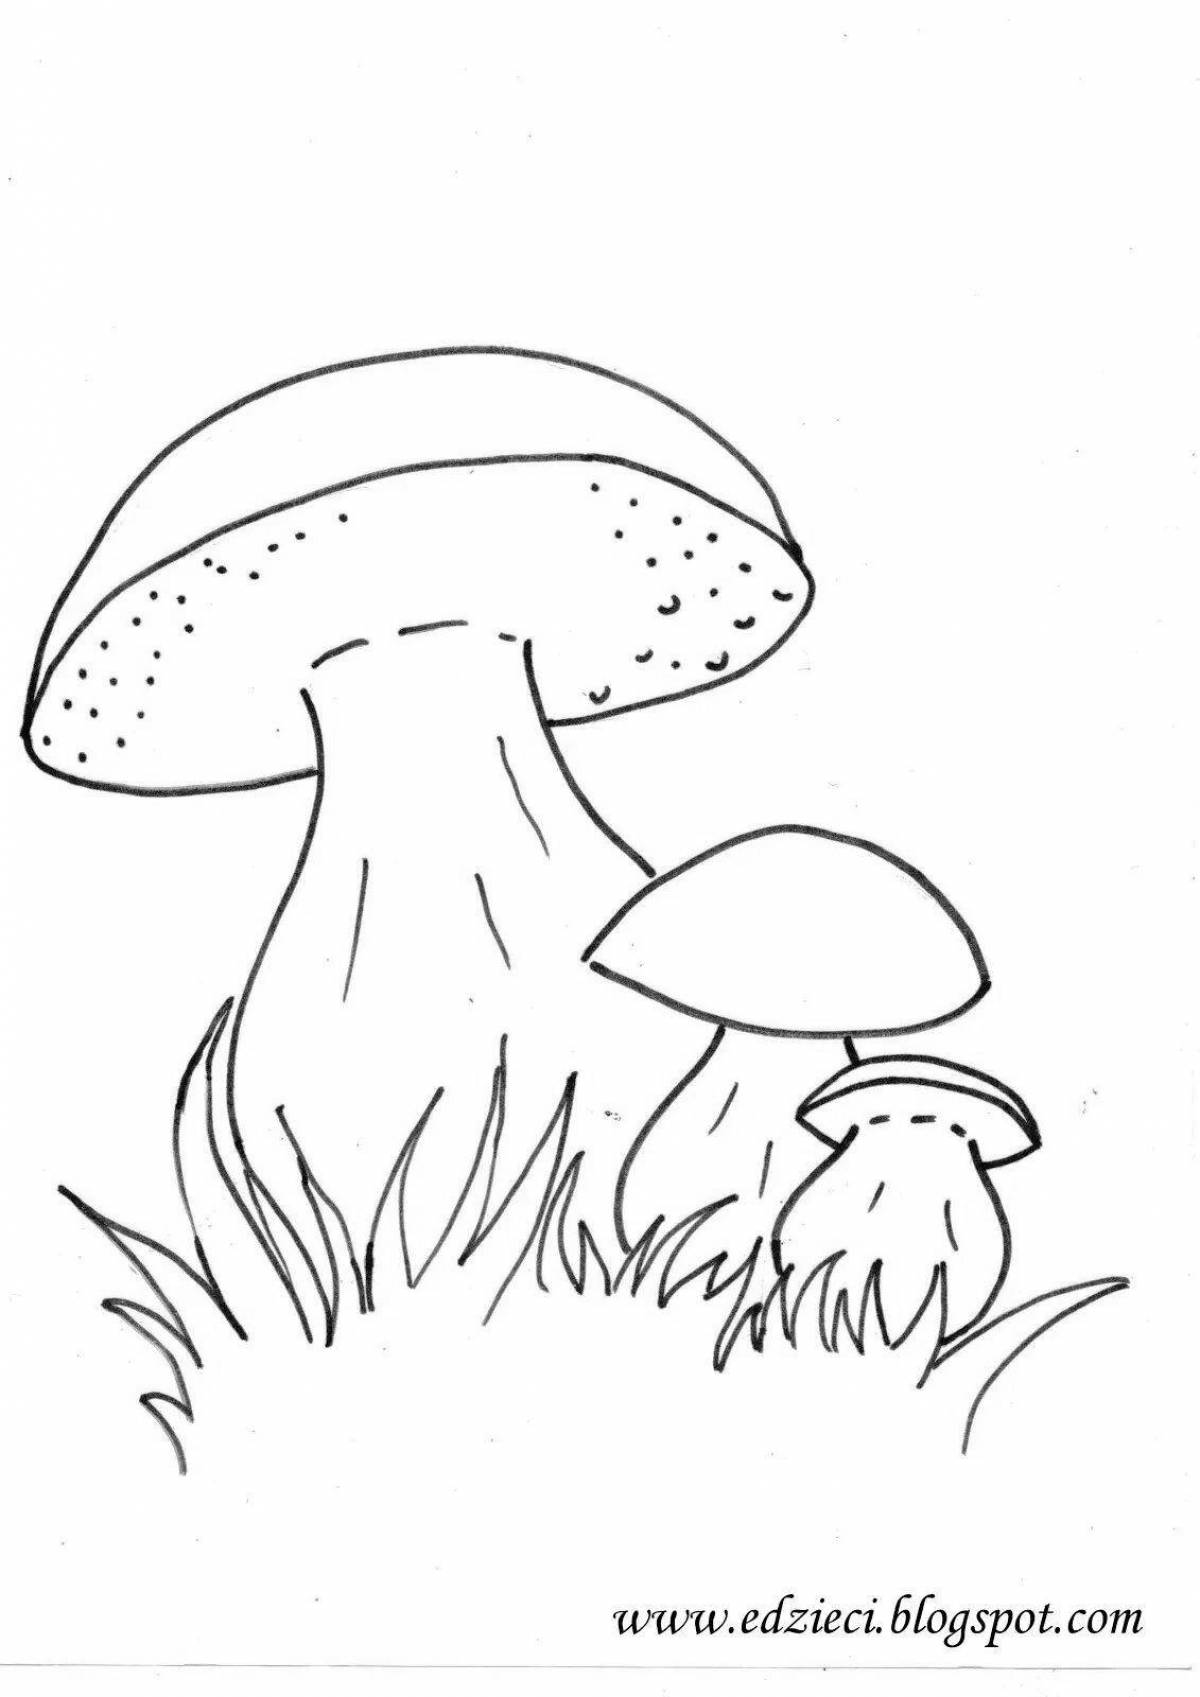 Раскраска очаровательный гриб боровик